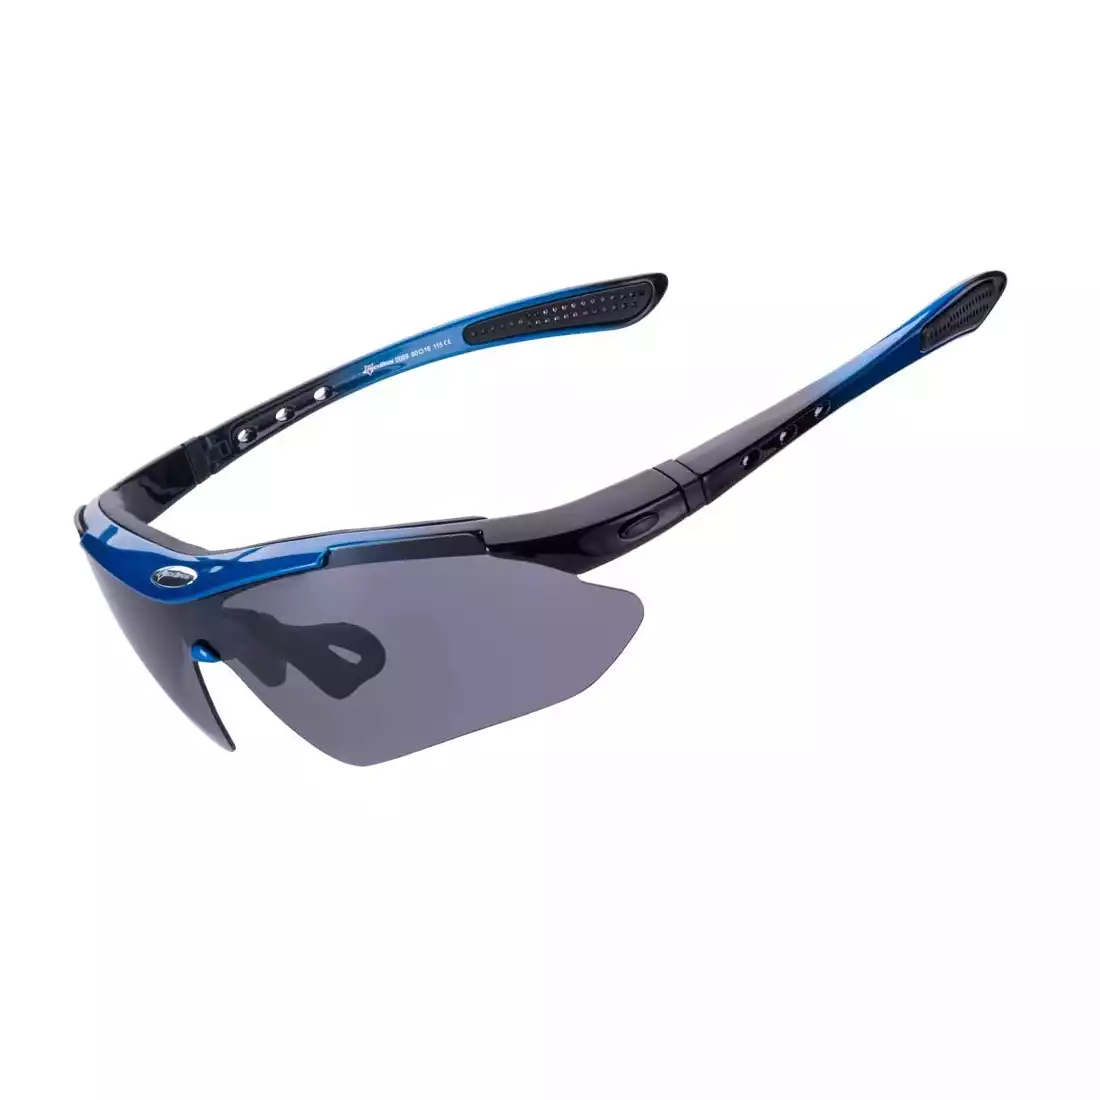 RockBros 10007 okulary rowerowe / sportowe z polaryzacją 5 soczewek wymiennych niebieskie